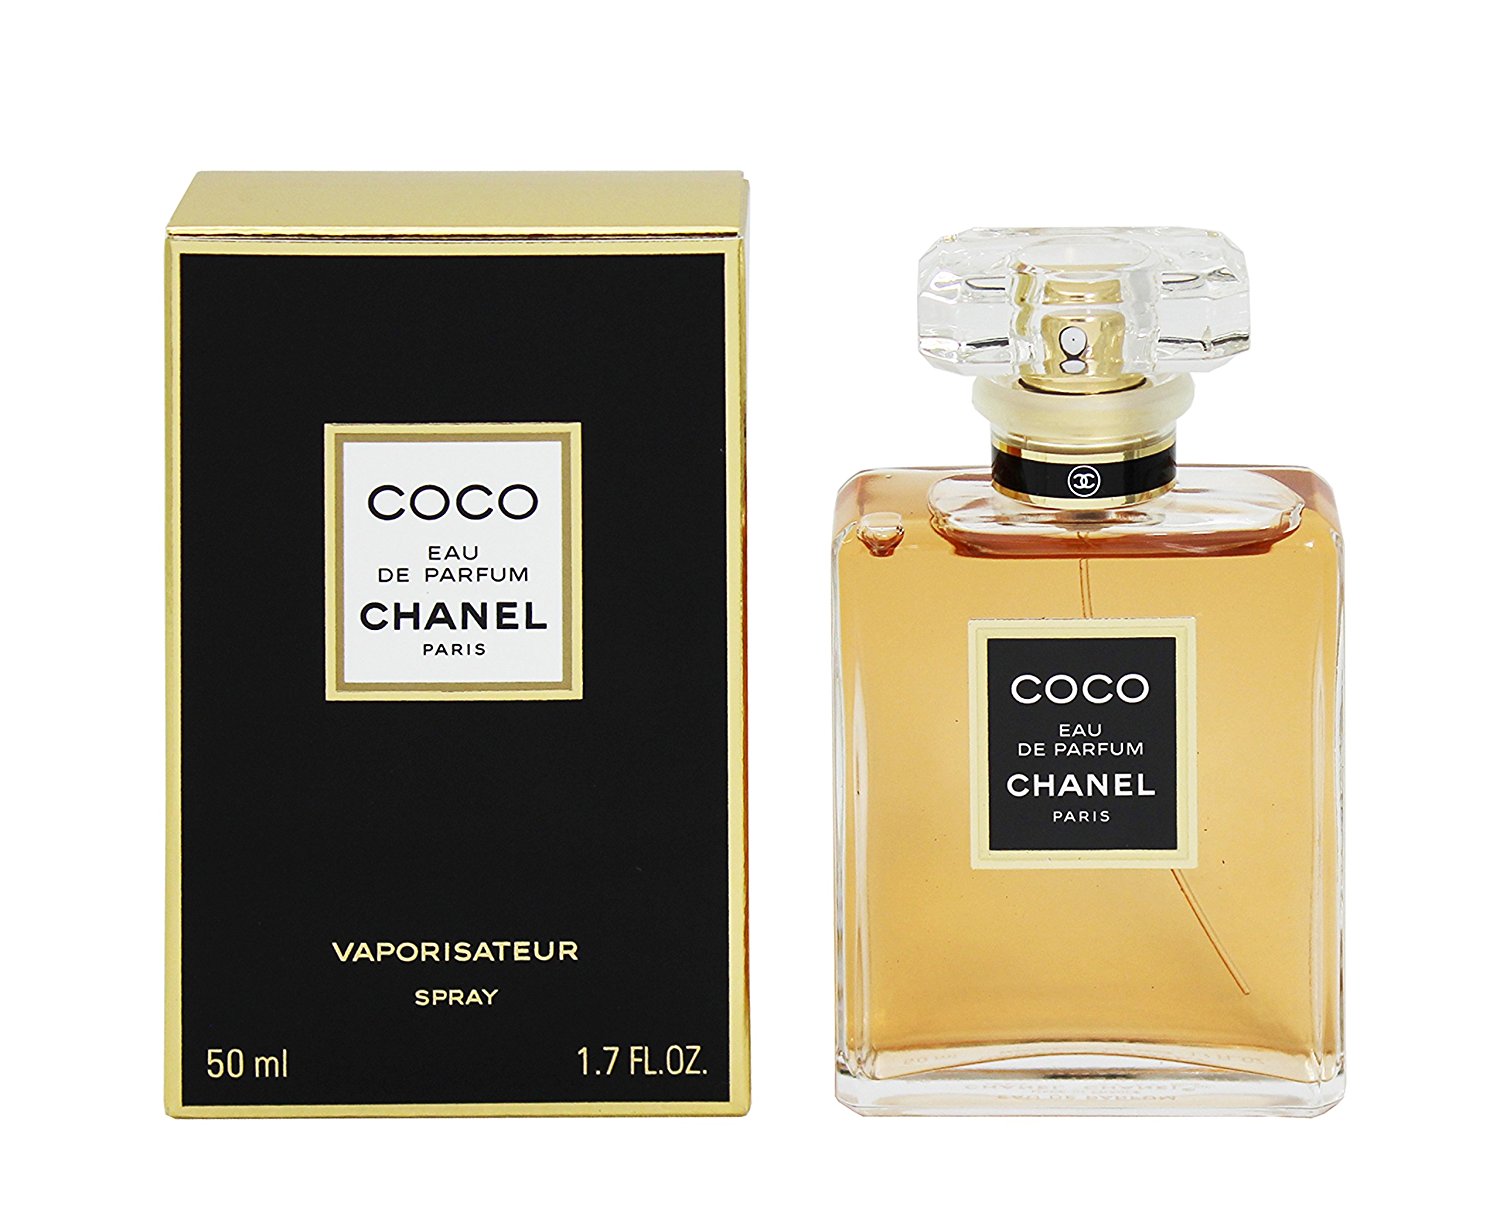 Купить Парфюмерная вода Chanel, Chanel Coco Eau De Parfum 35ml, Франция